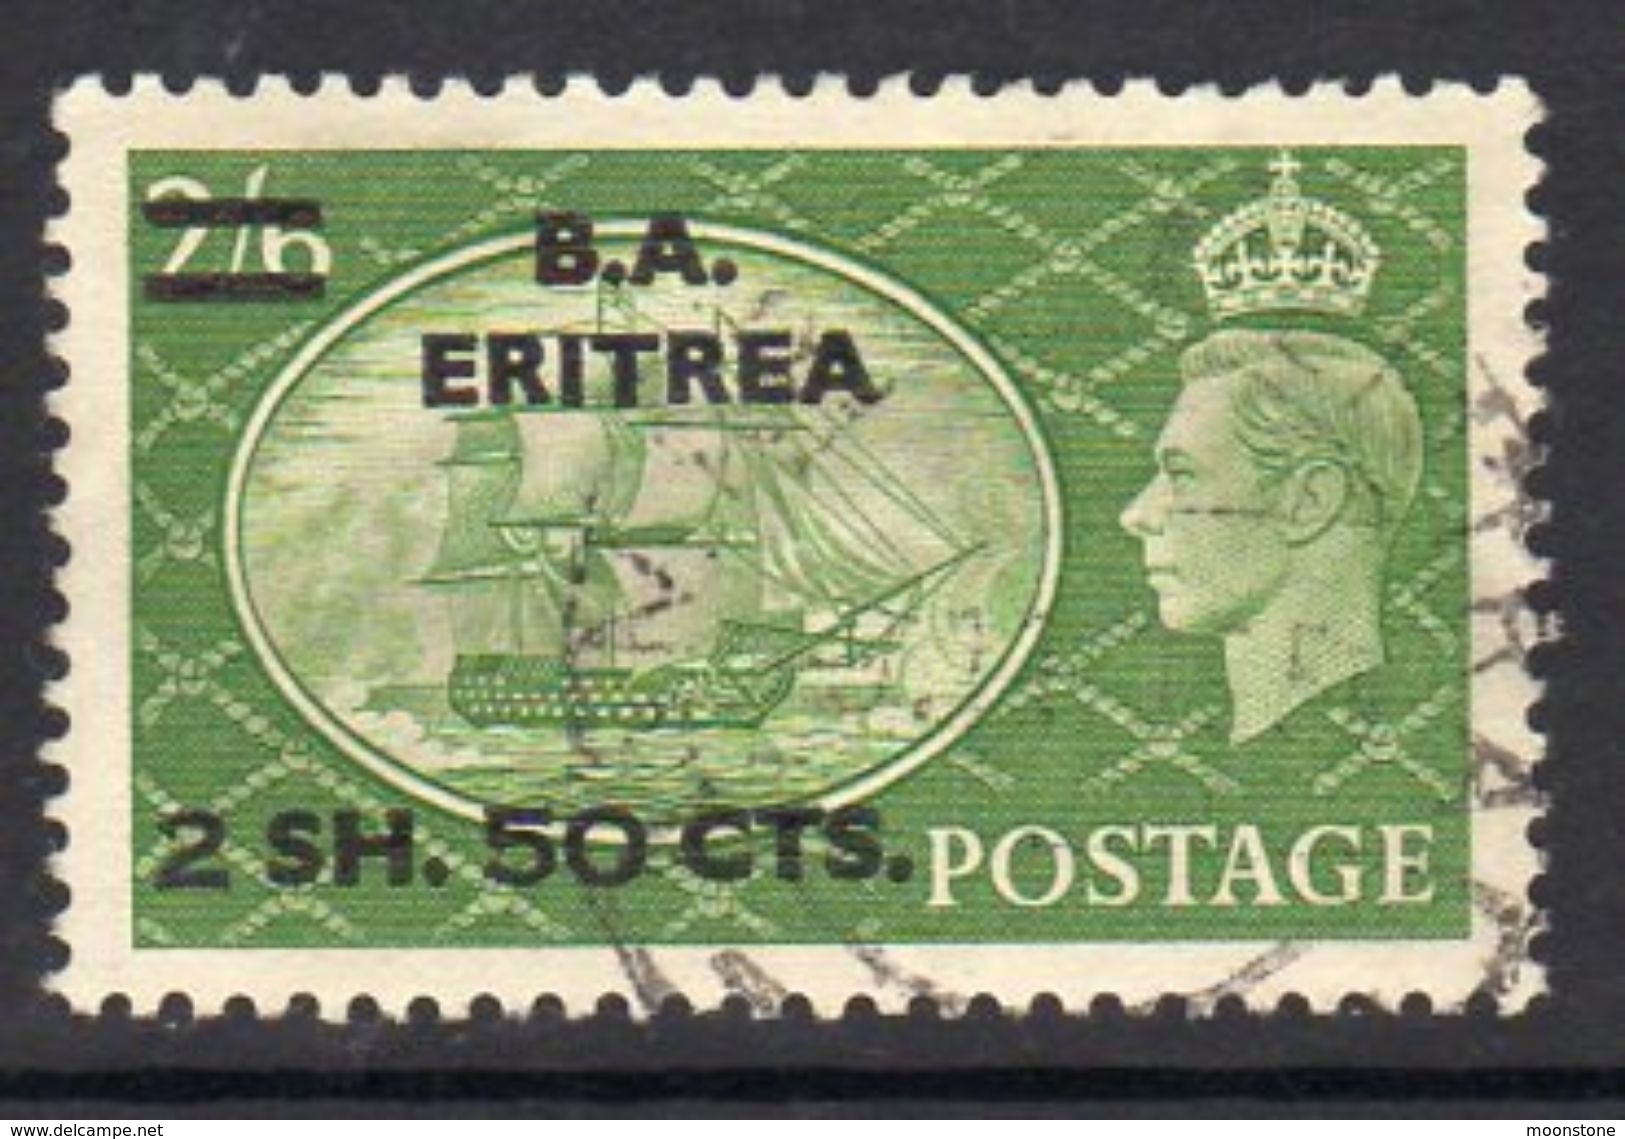 BOIC, BA Eritrea 1951 2s.50 On 2/6d Overprint On GB, Used, SG E30 (A) - Eritrée